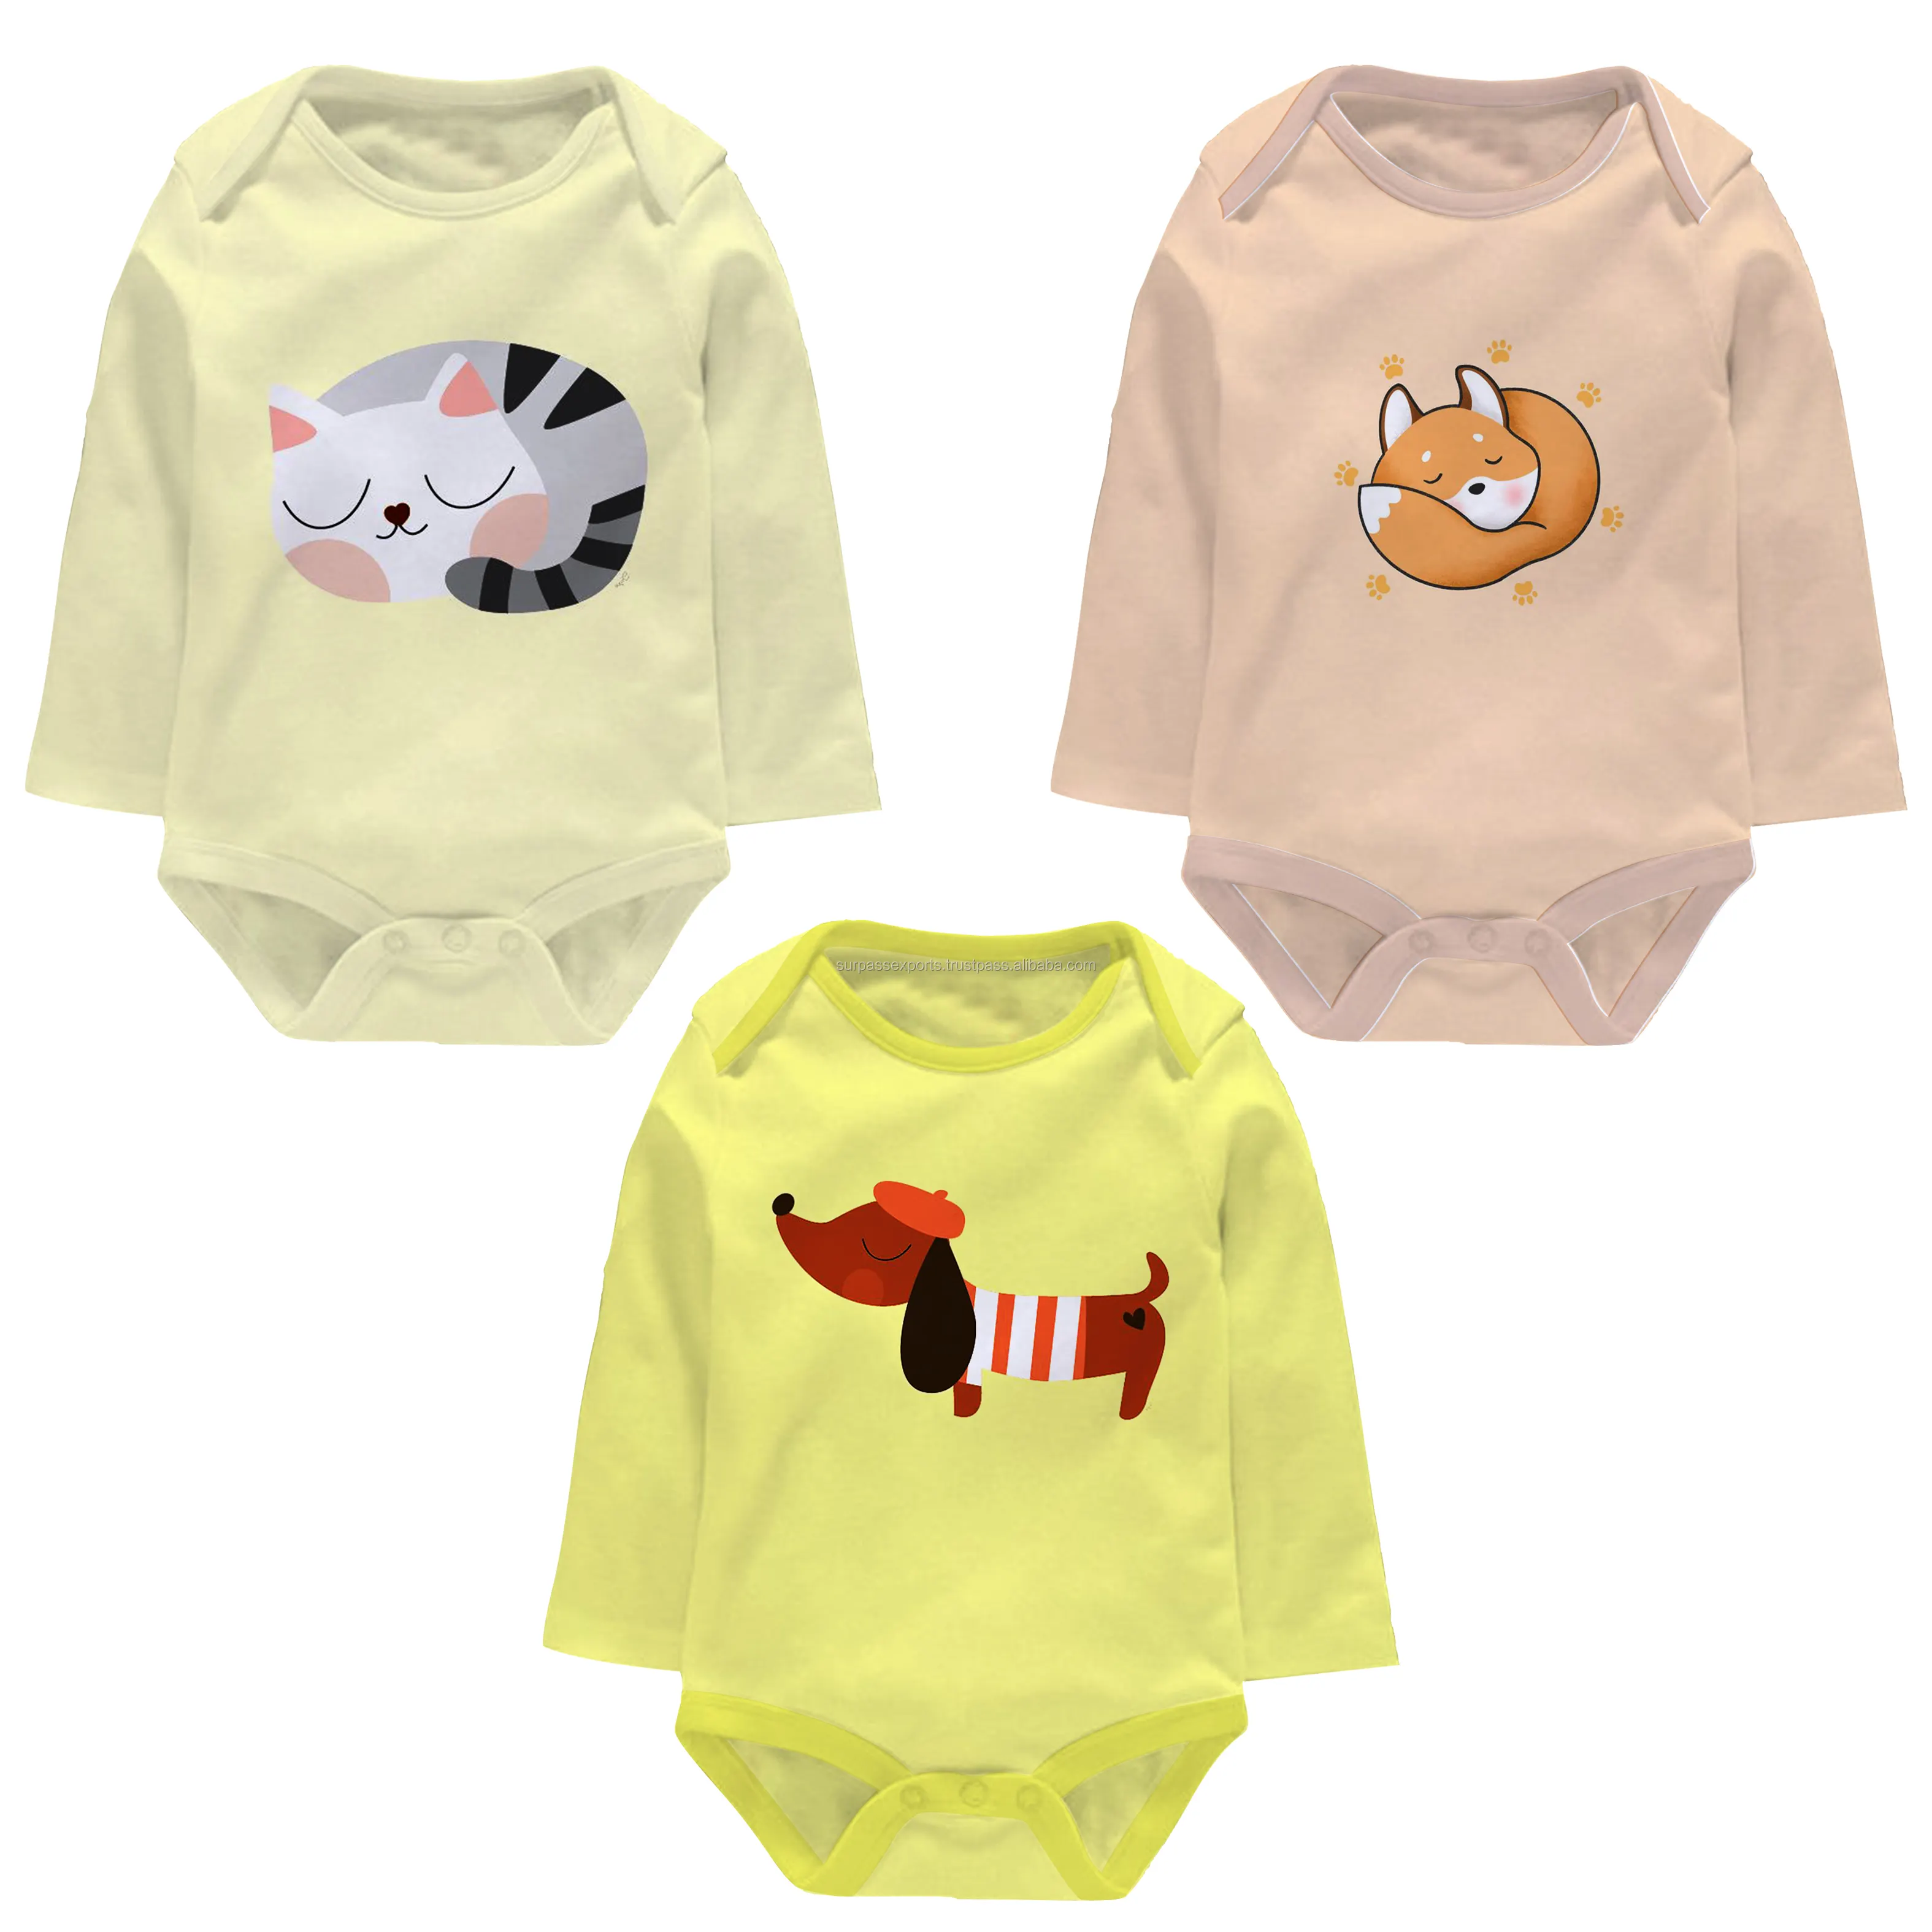 Alta a demanda artesanal conjuntos de roupas de verão do bebê com design de luxo disponível em multicolor e tamanho